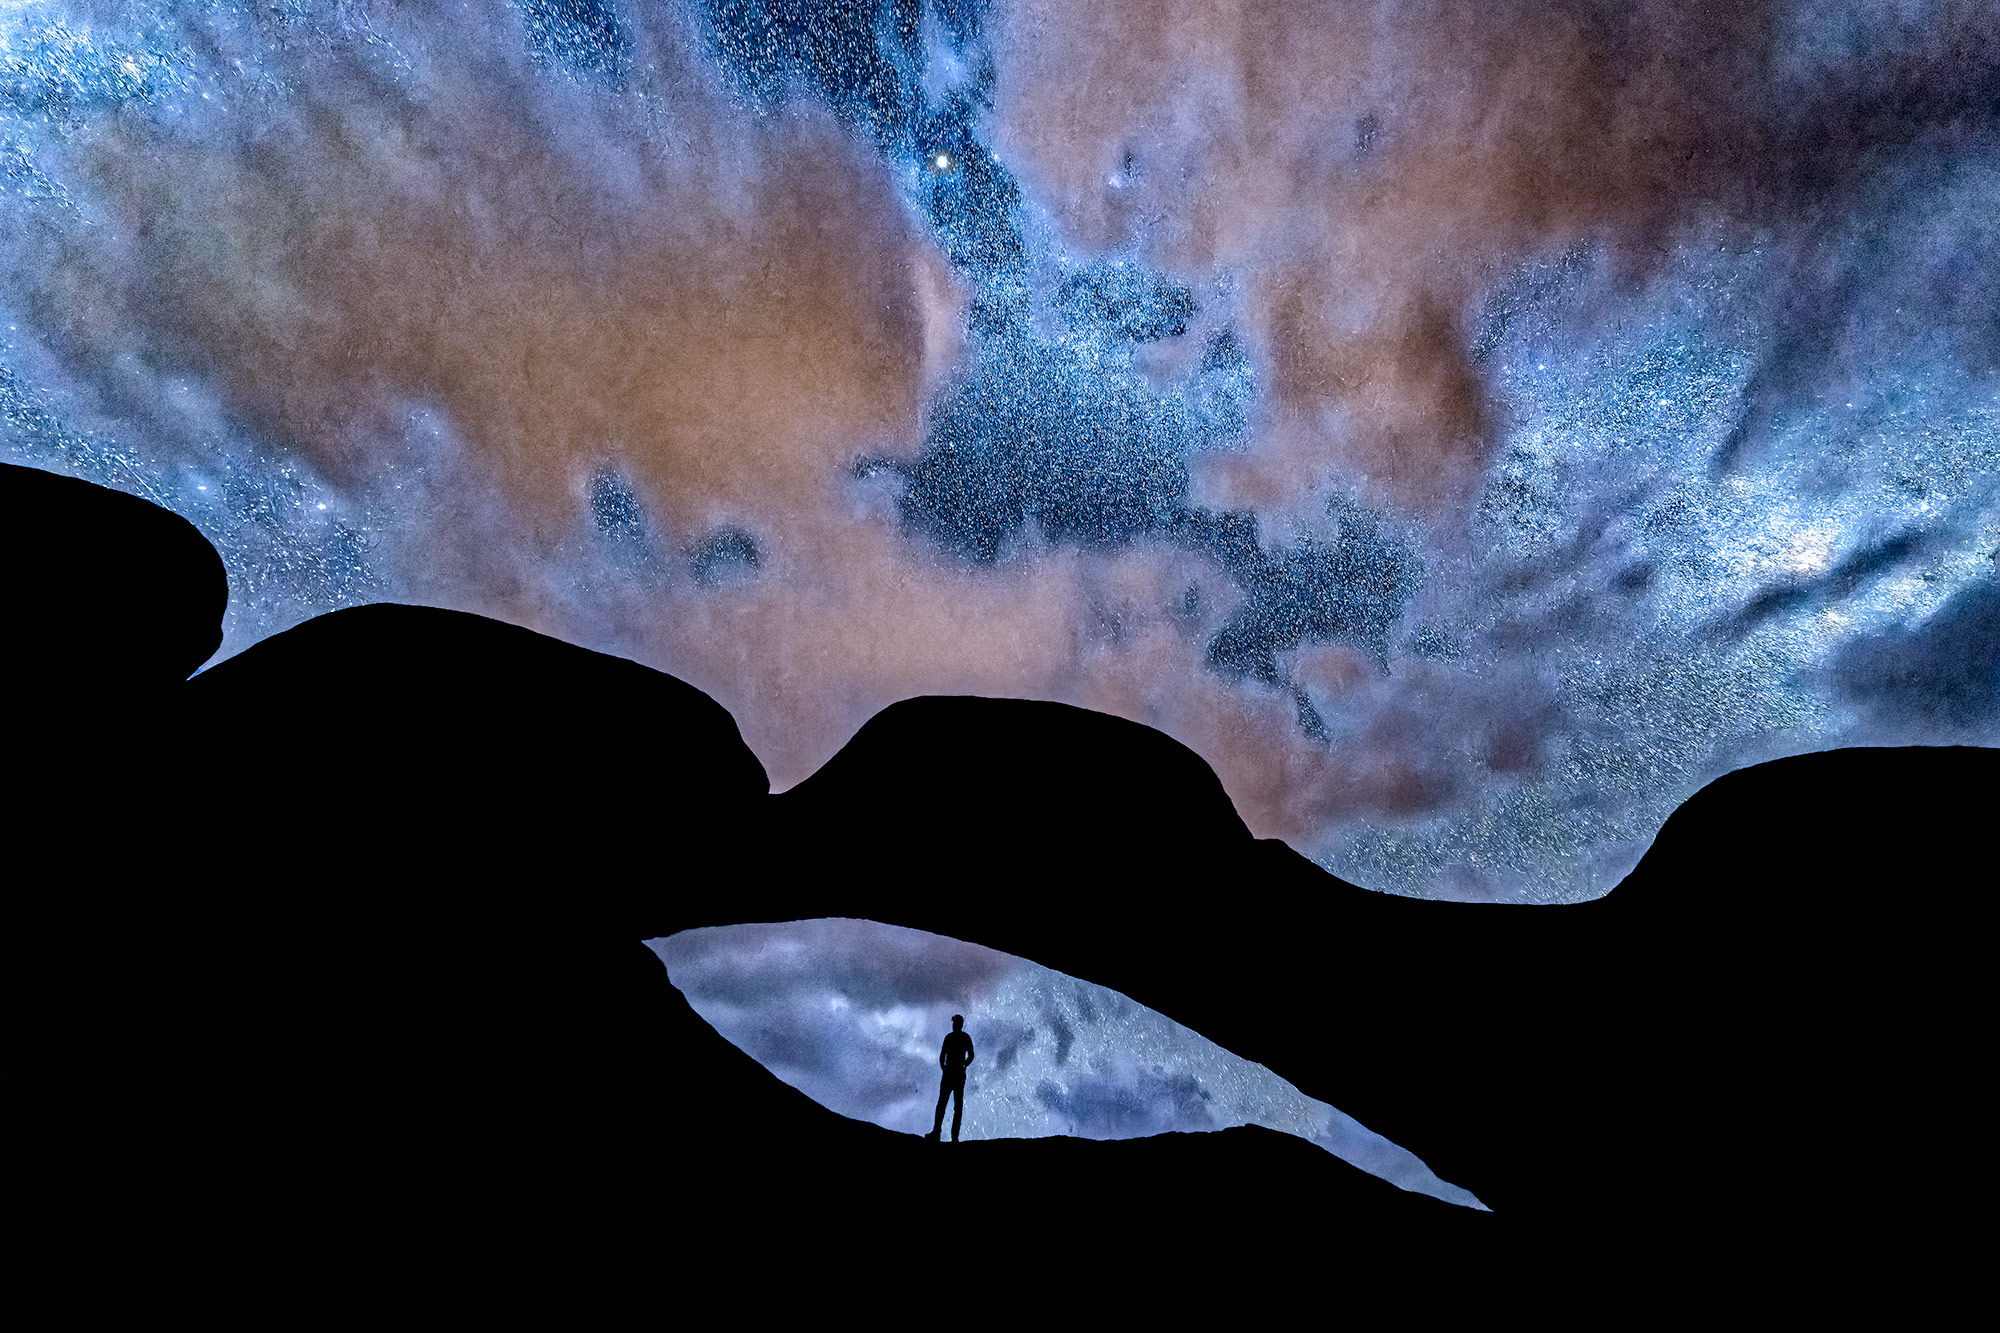 Nachtaufnahme vom Sternehimmel und Milchstraße aus Namibia. Fotografiert von Benny Rebel auf einer Fotoreise.